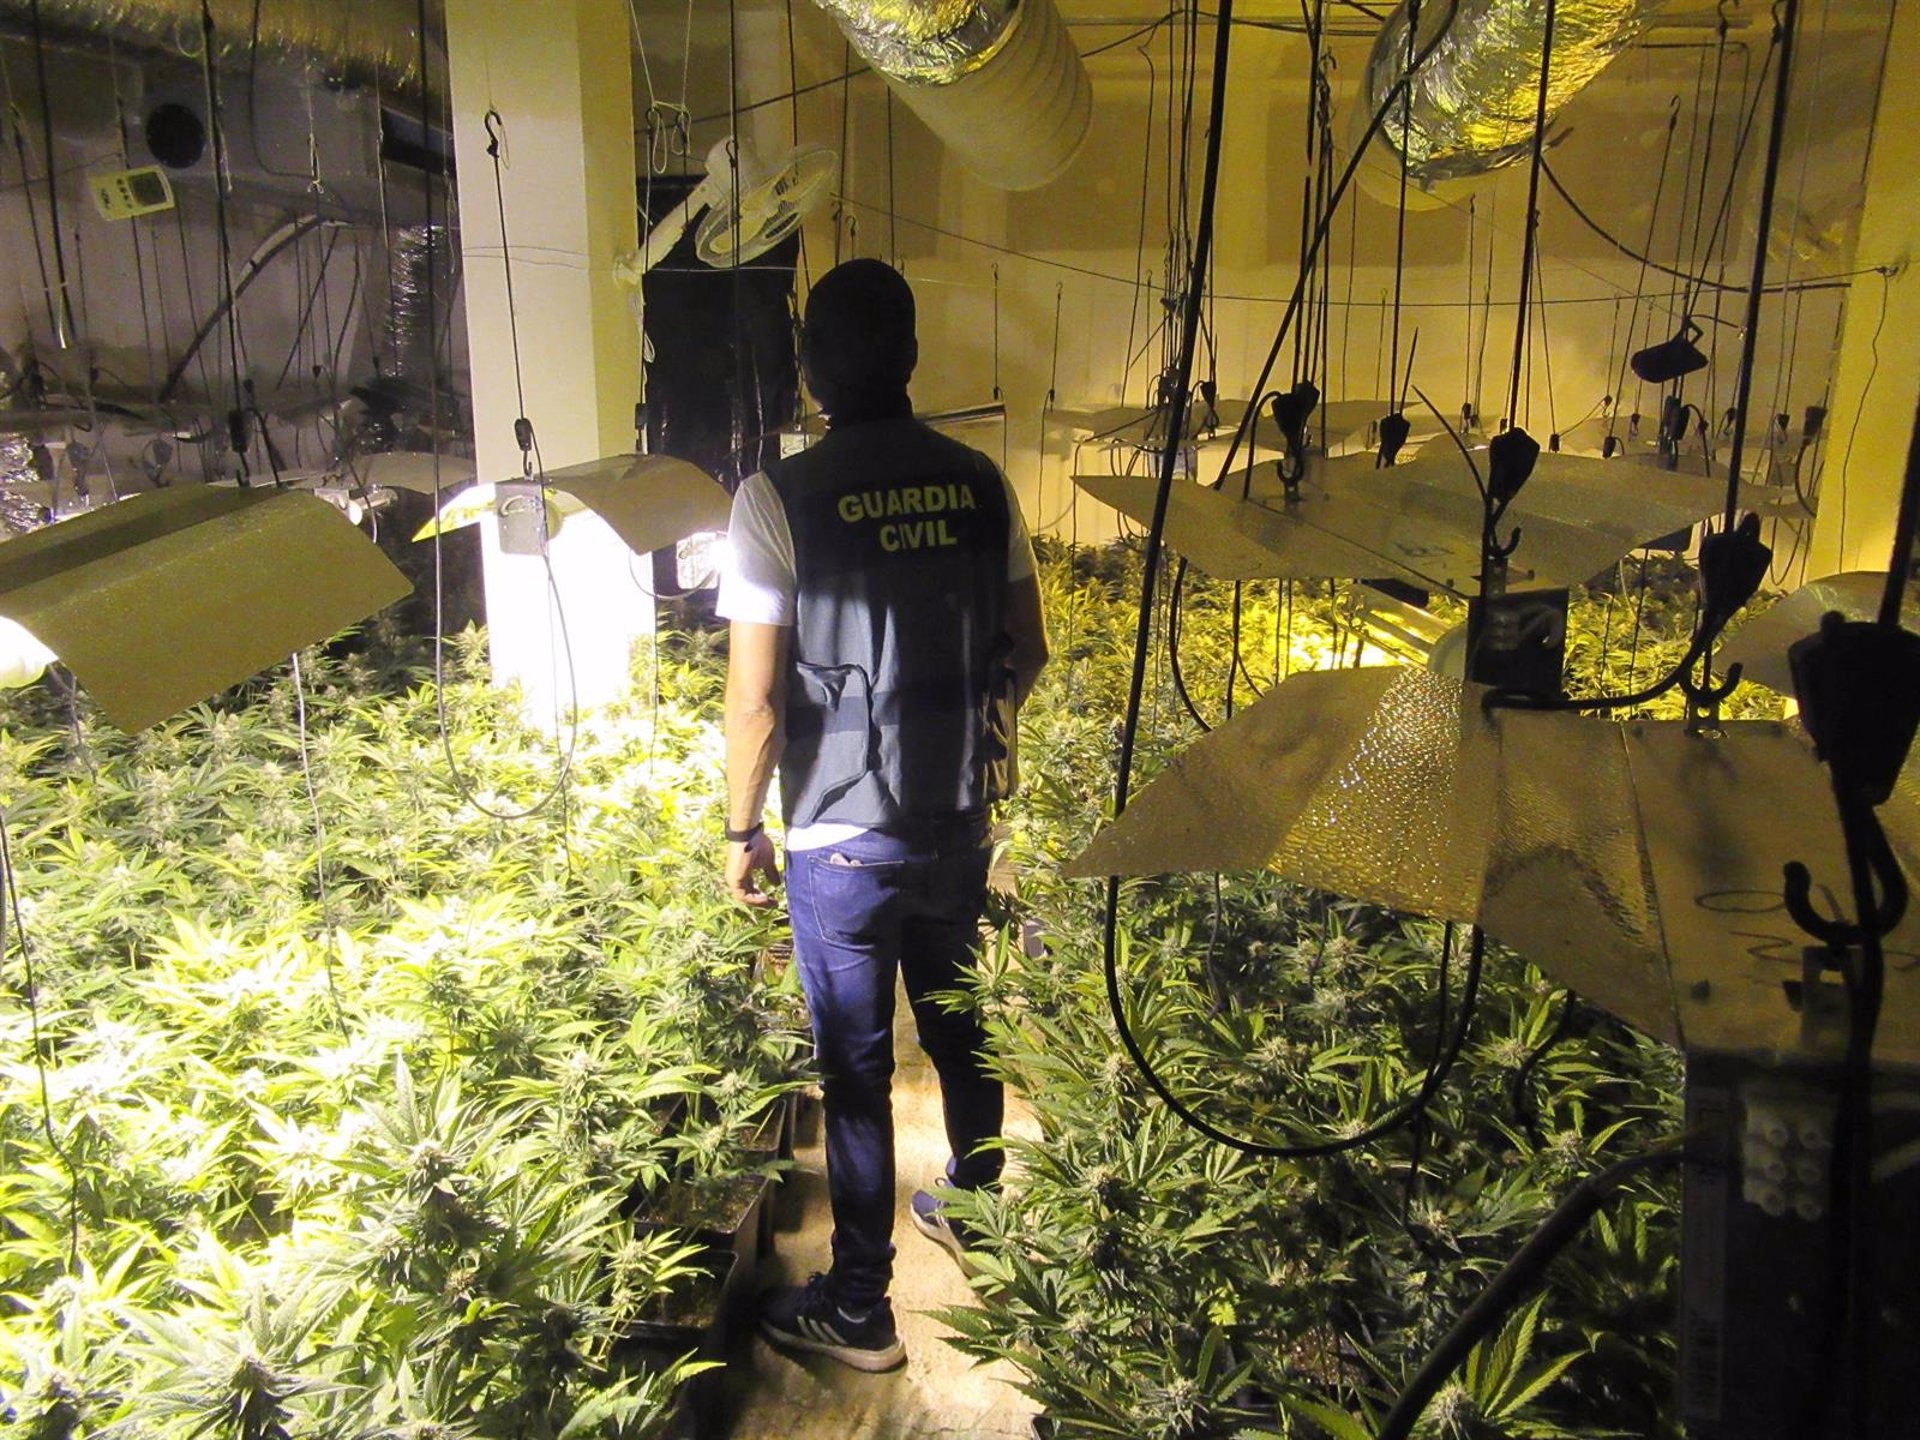 Descubierto un zulo en una vivienda de Alomartes donde se cultivaban 1.100 plantas de marihuana